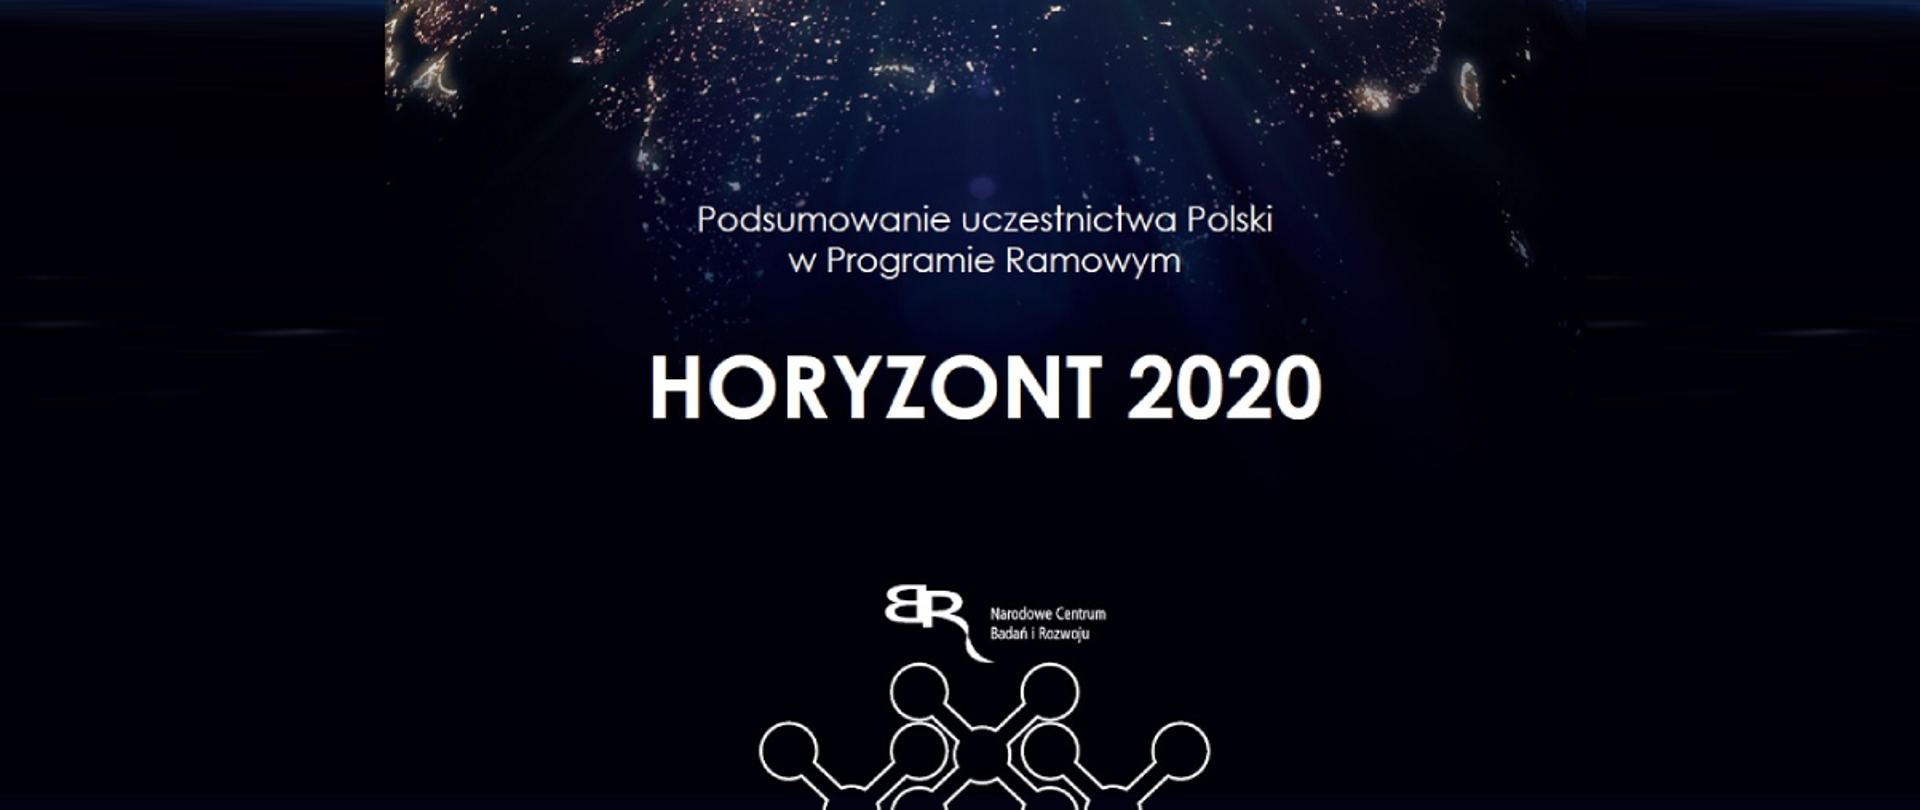 Podsumowanie uczestnictwa Polski w Programie Ramowym
Horyzont 2020